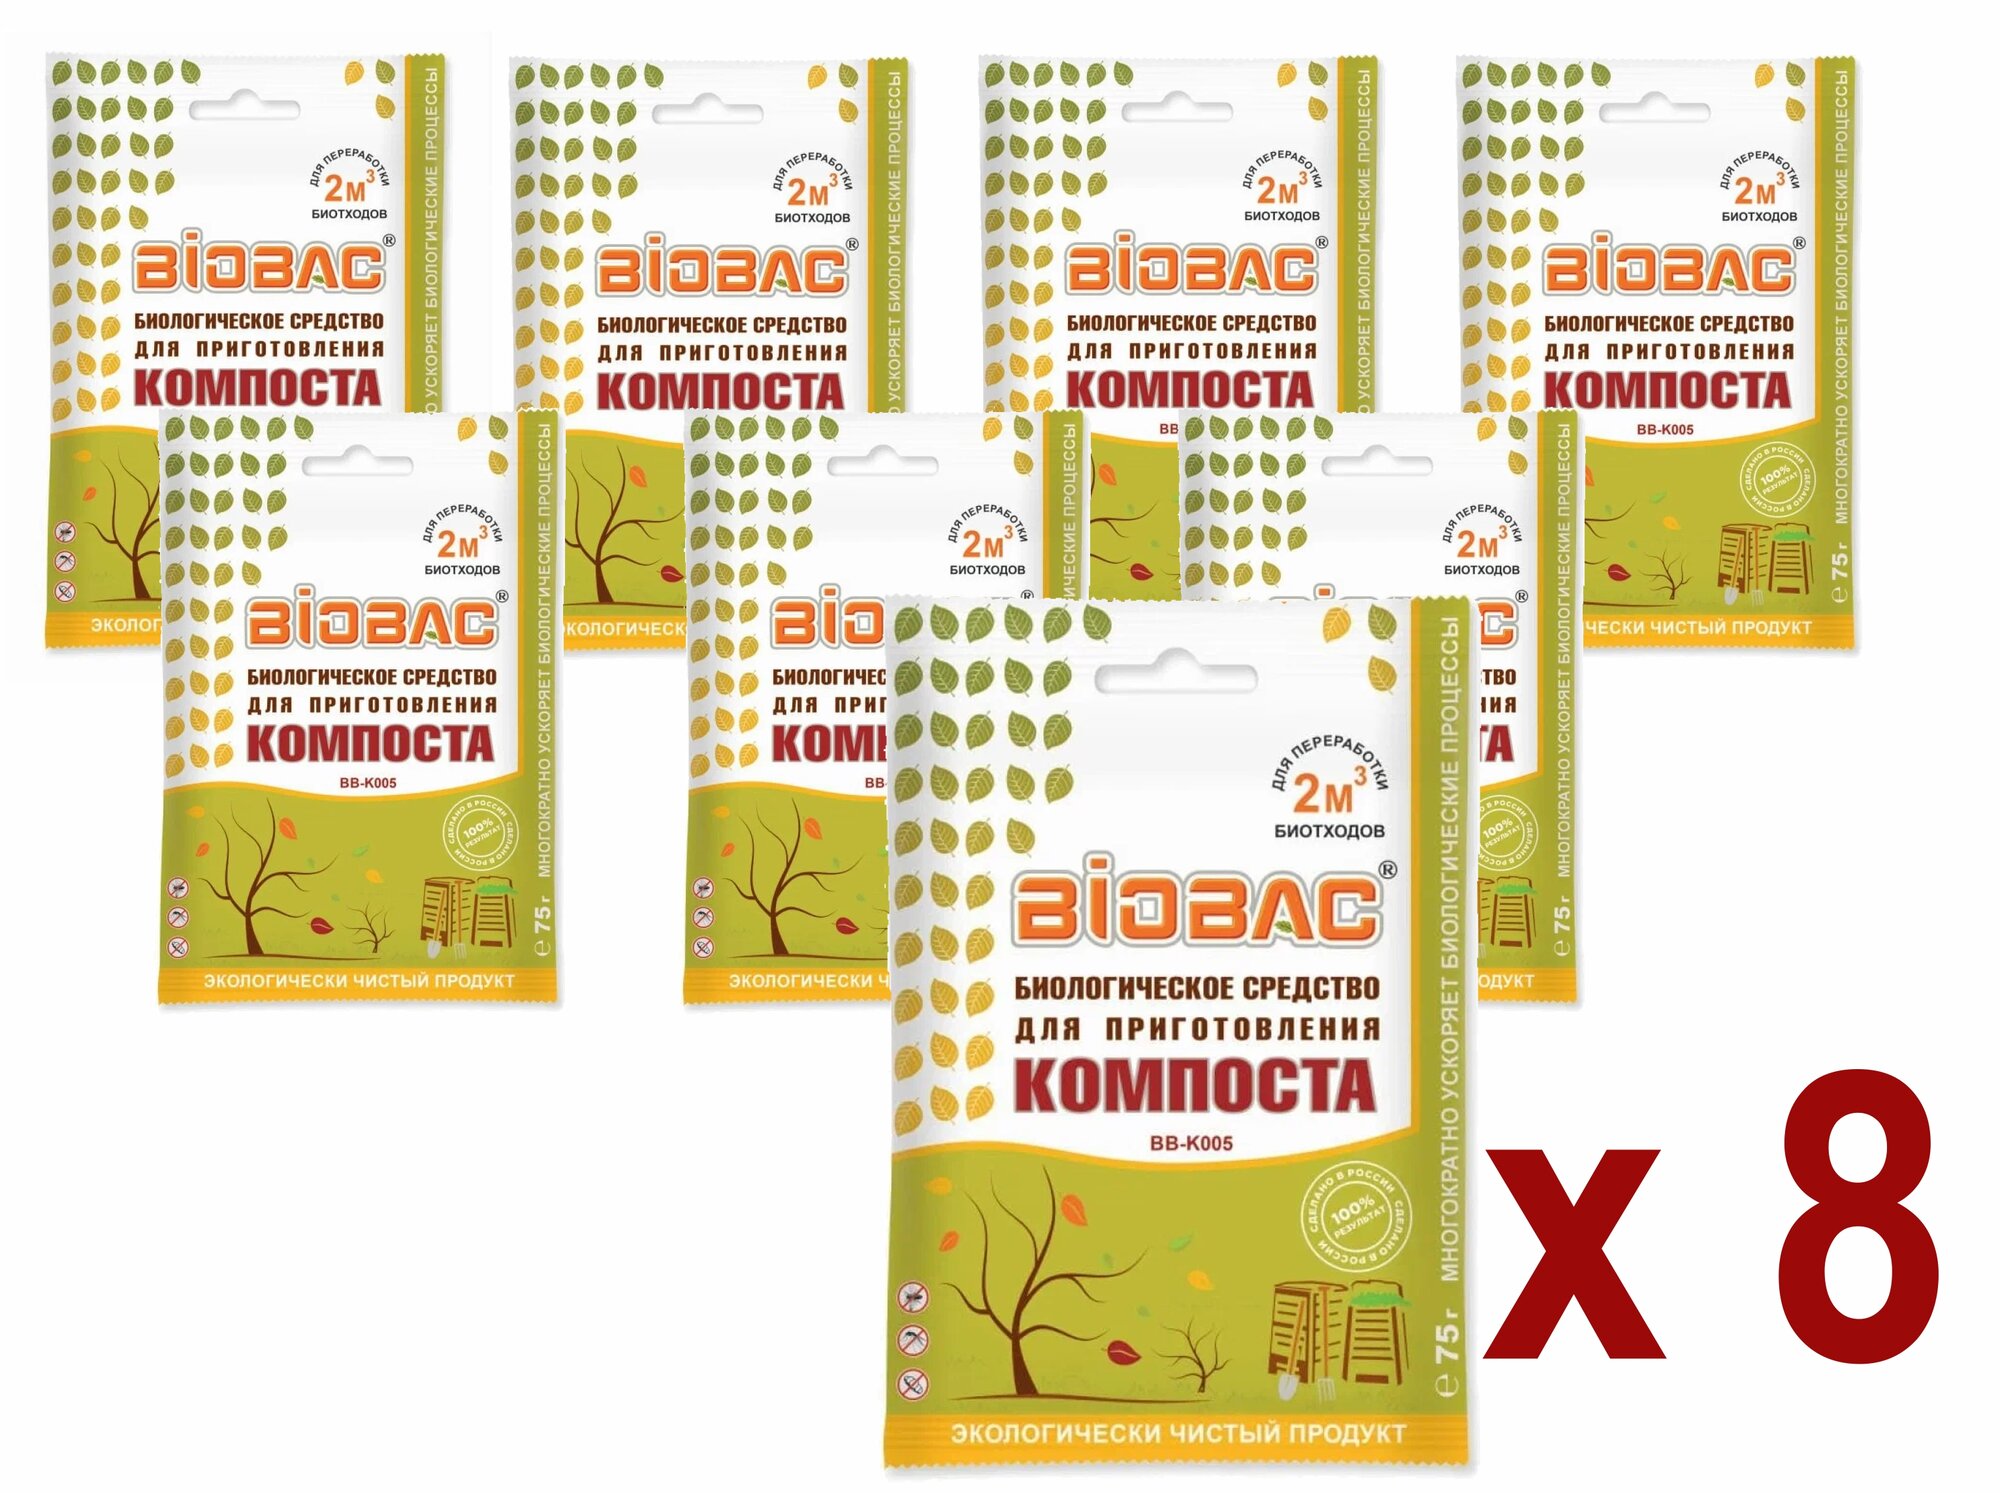 BioBac Биологическое средство для приготовления компоста BB-K005, 0.075 кг, 8 упак